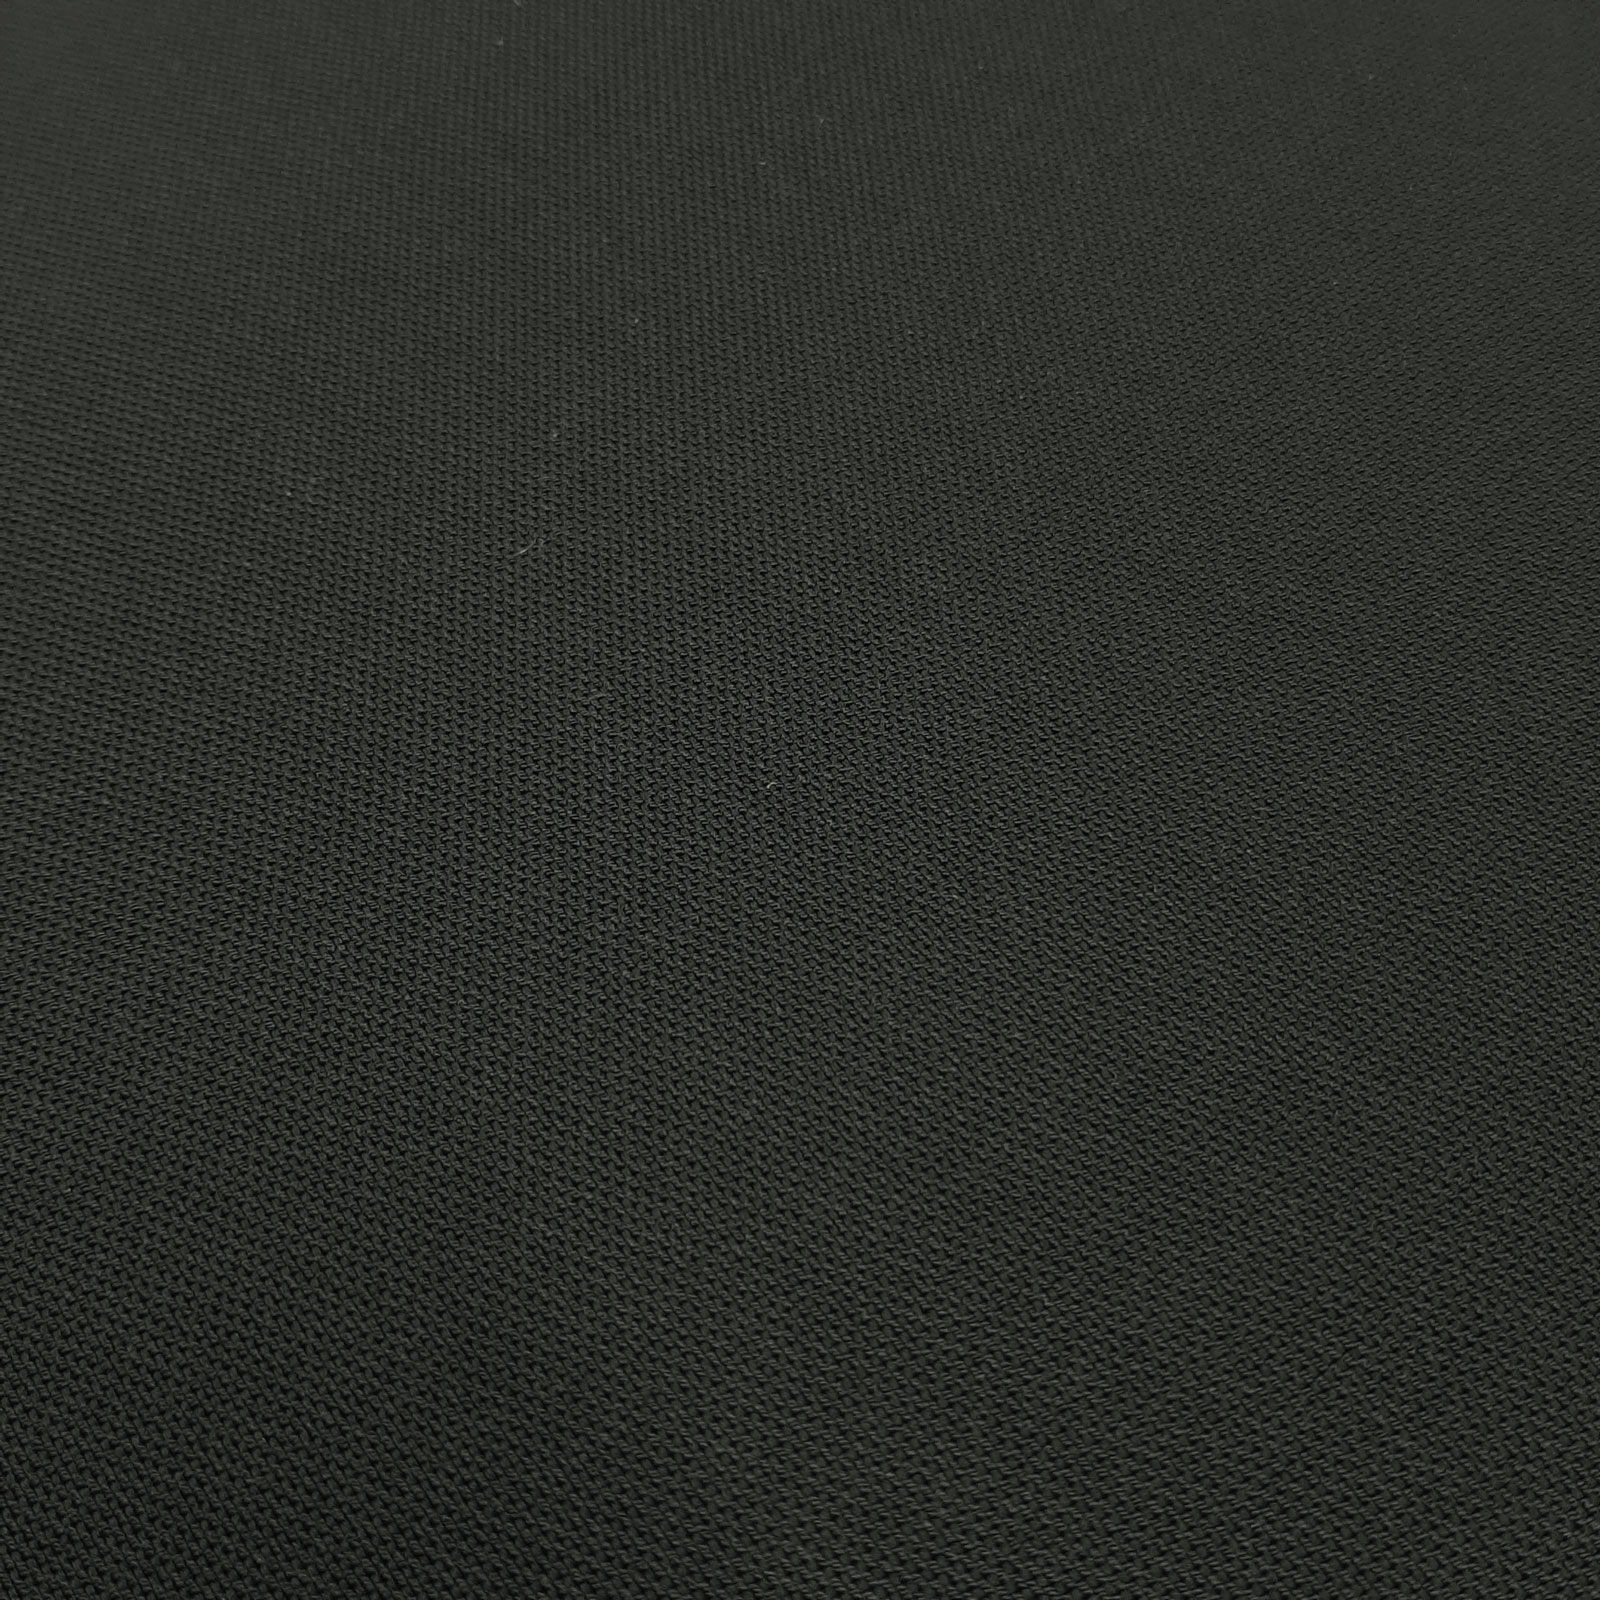 Delmiros - Laminado Keprotec® 3 capas - Private Black - por 10 cm